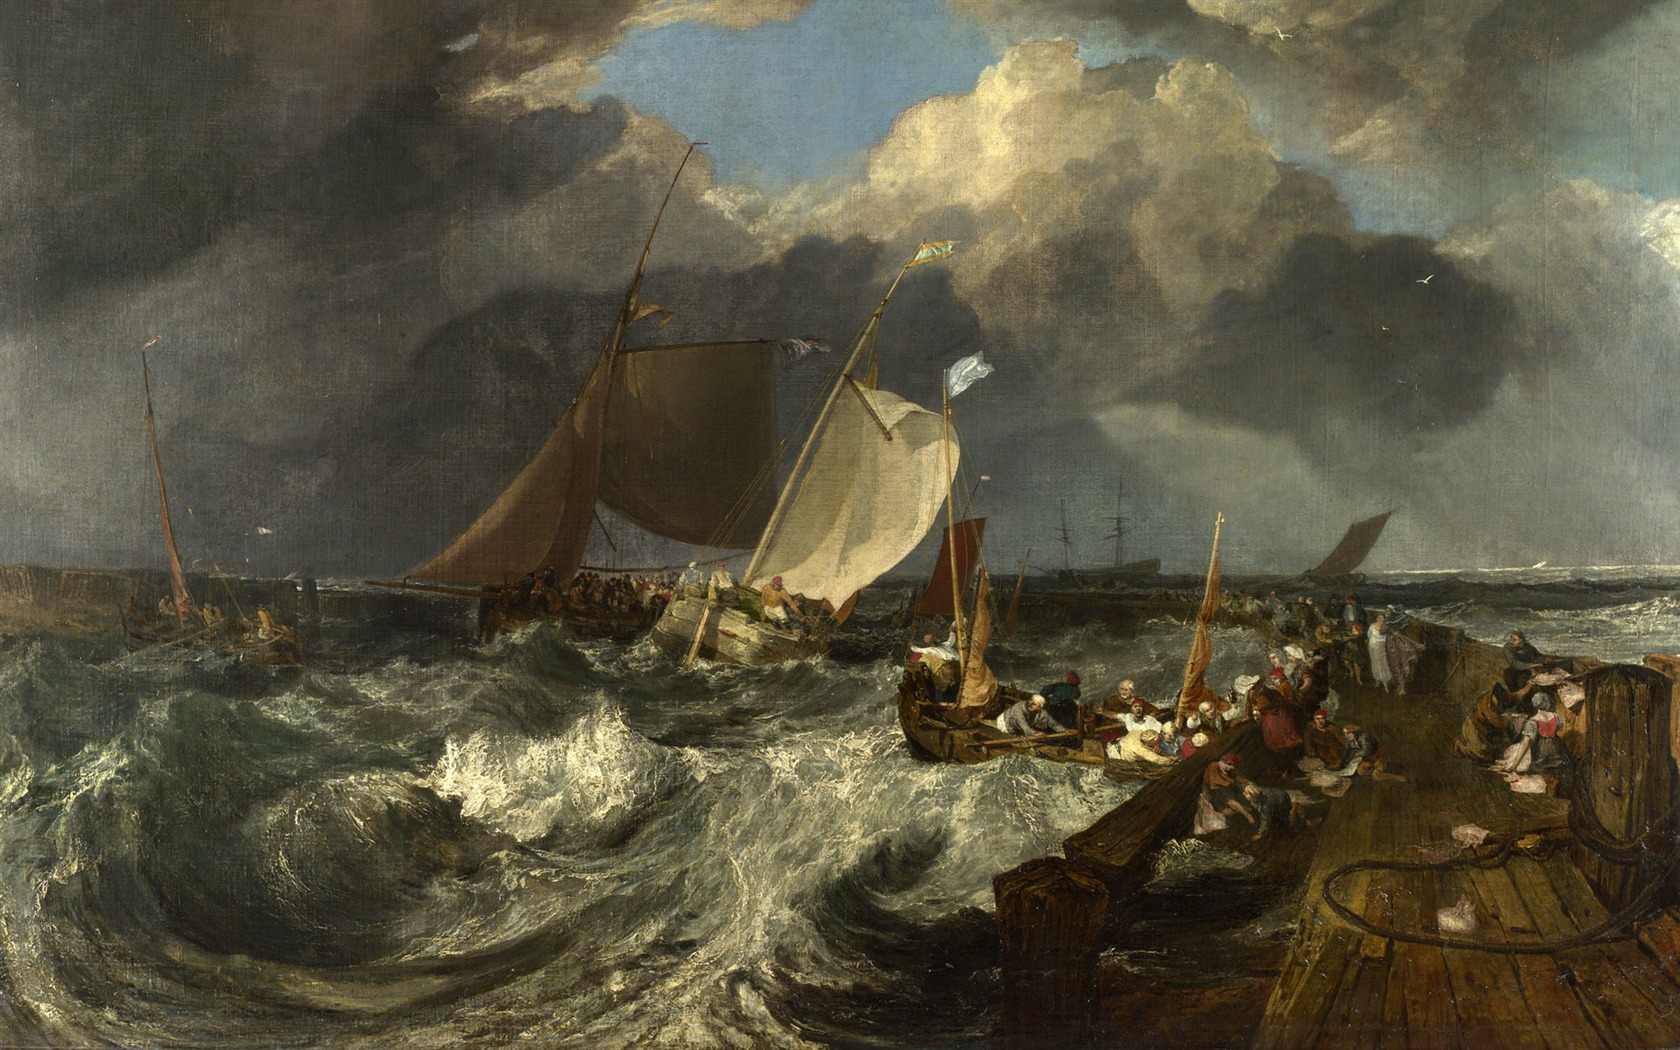 伦敦画廊帆船 壁纸(一)13 - 1680x1050